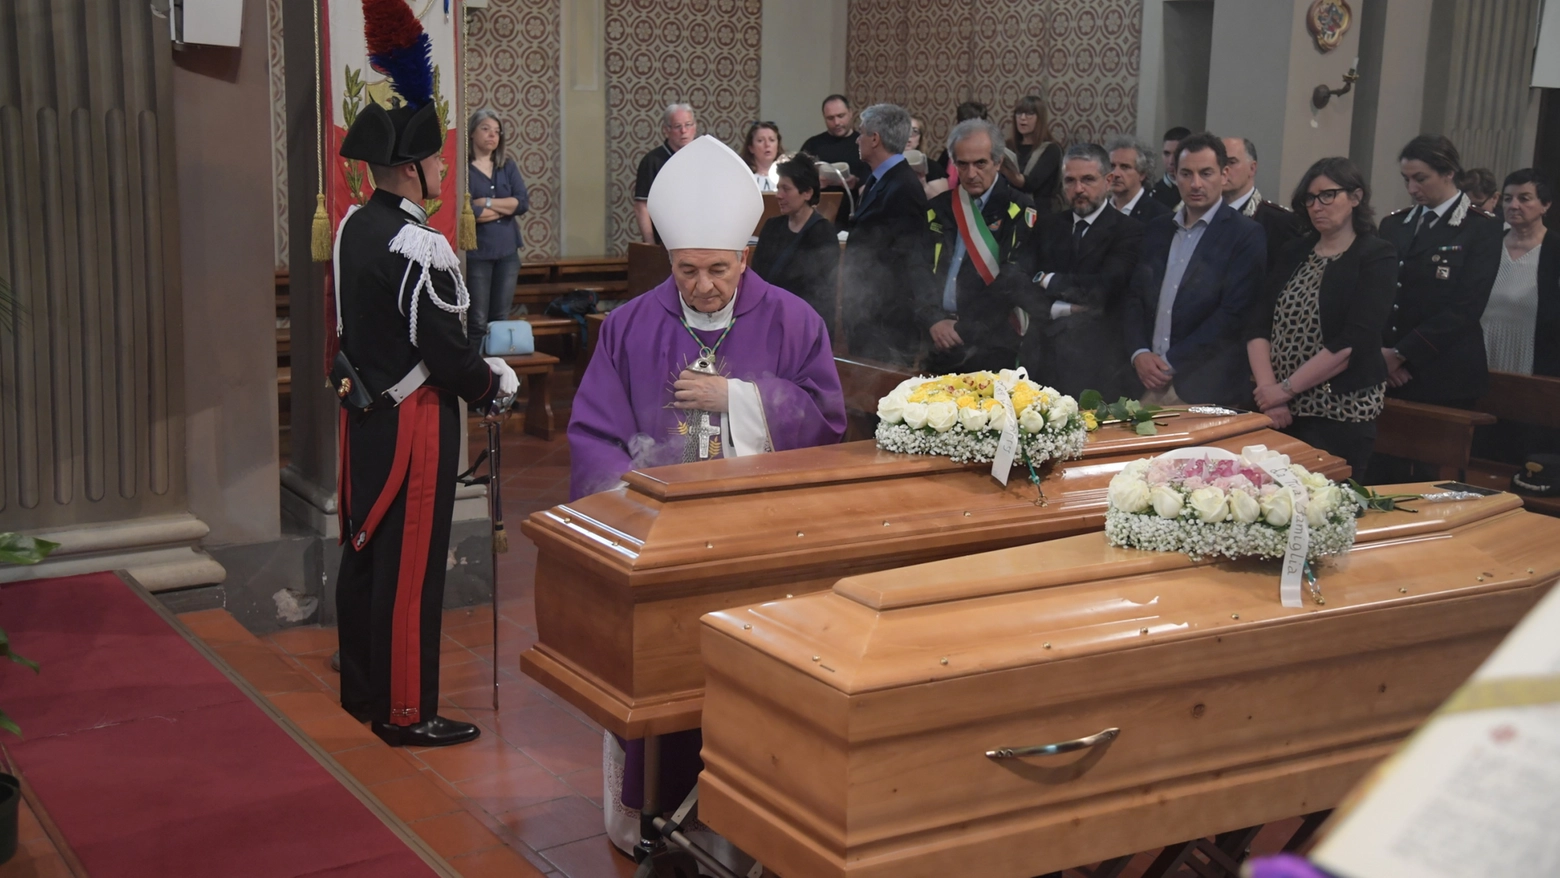 Le scuse del sindaco al funerale di Franco Prati e Adriana Mazzoli: “Qualcosa non ha funzionato”
